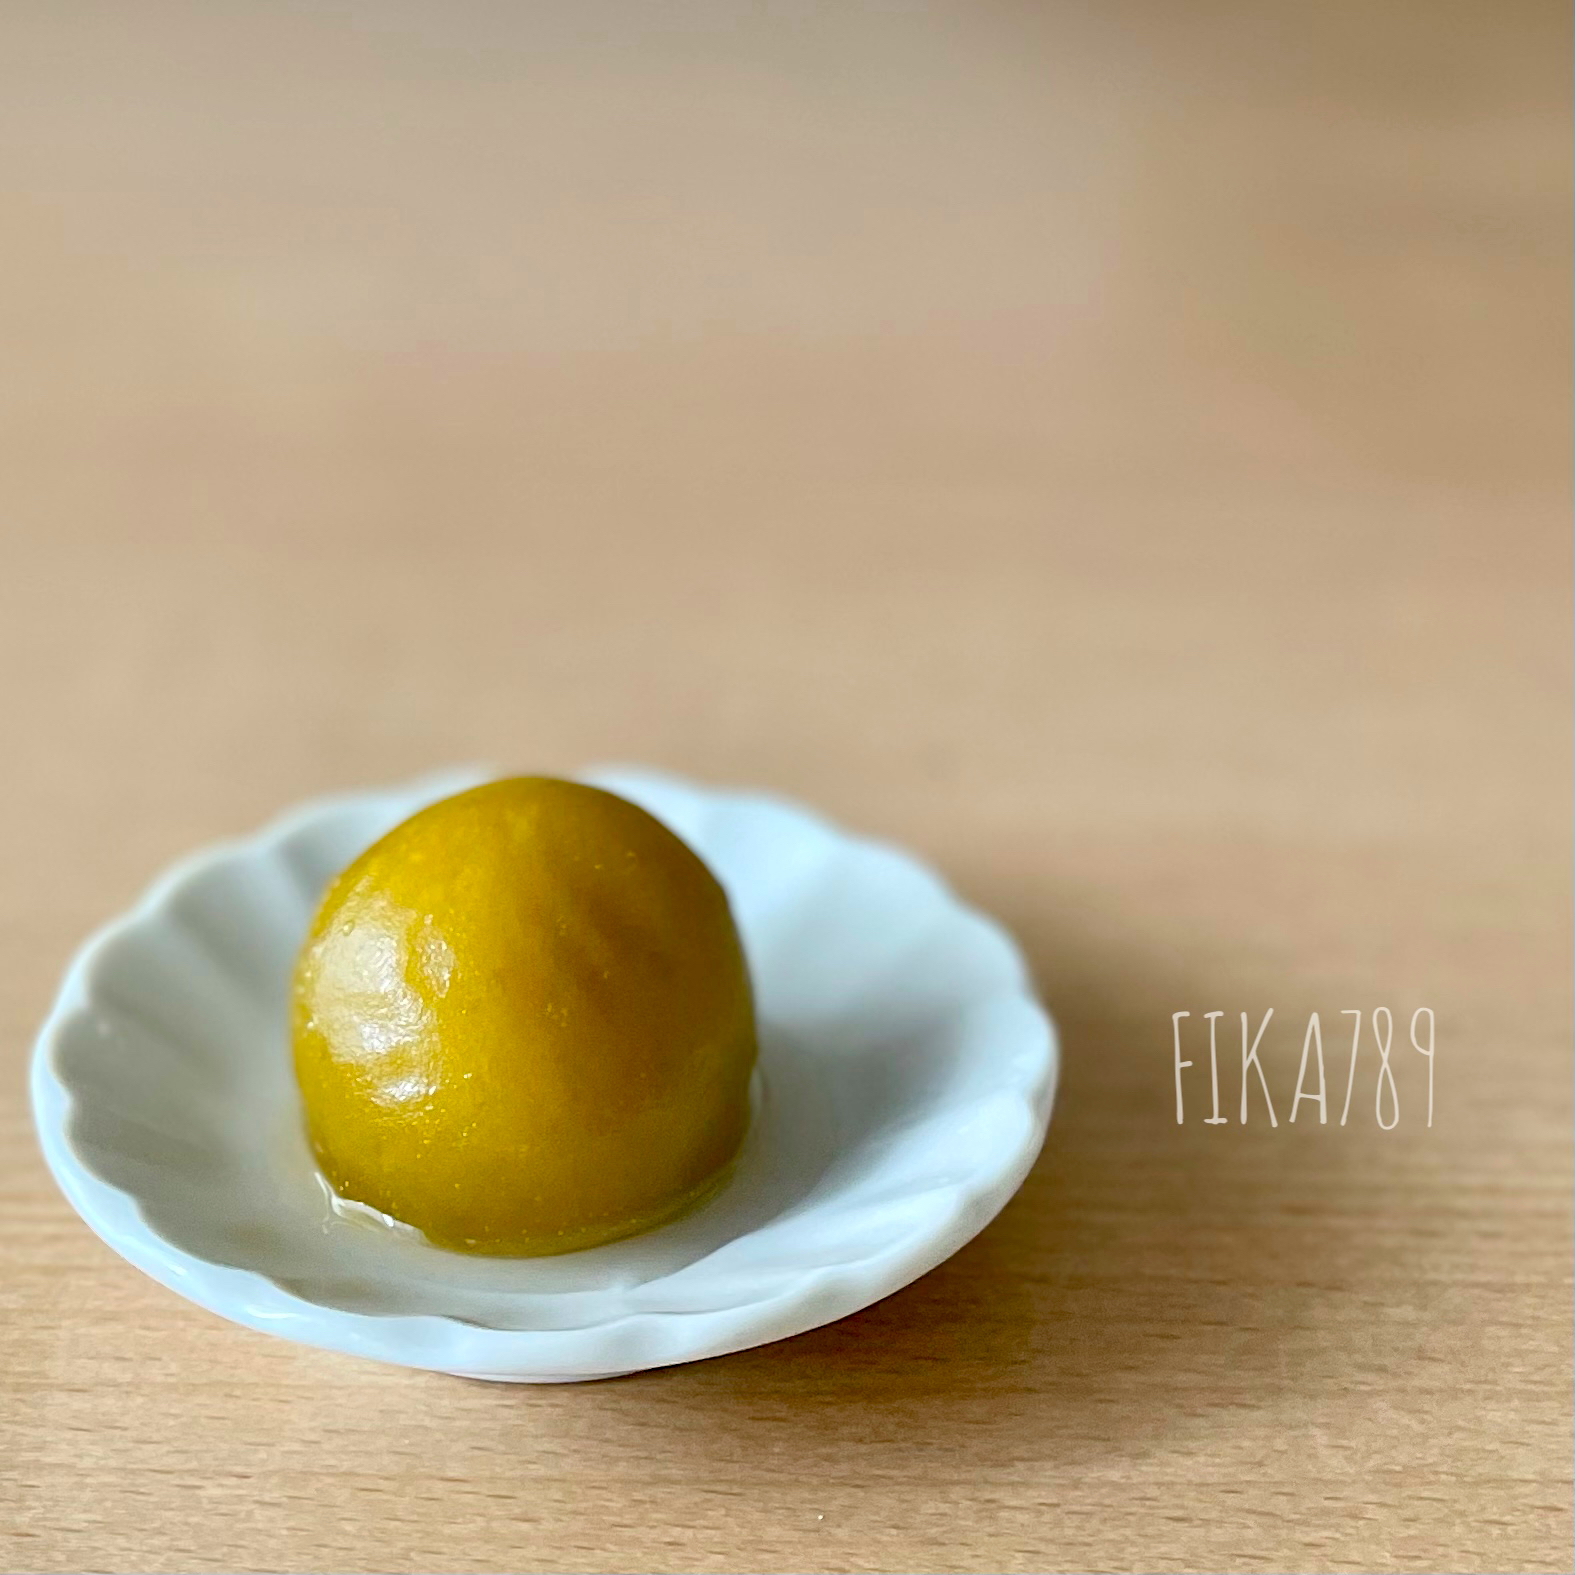 イチロッタさんの料理 shakuyakuちゃんの『青梅の白ワイン煮🌱』✨✨✨梅仕事始めました。😄